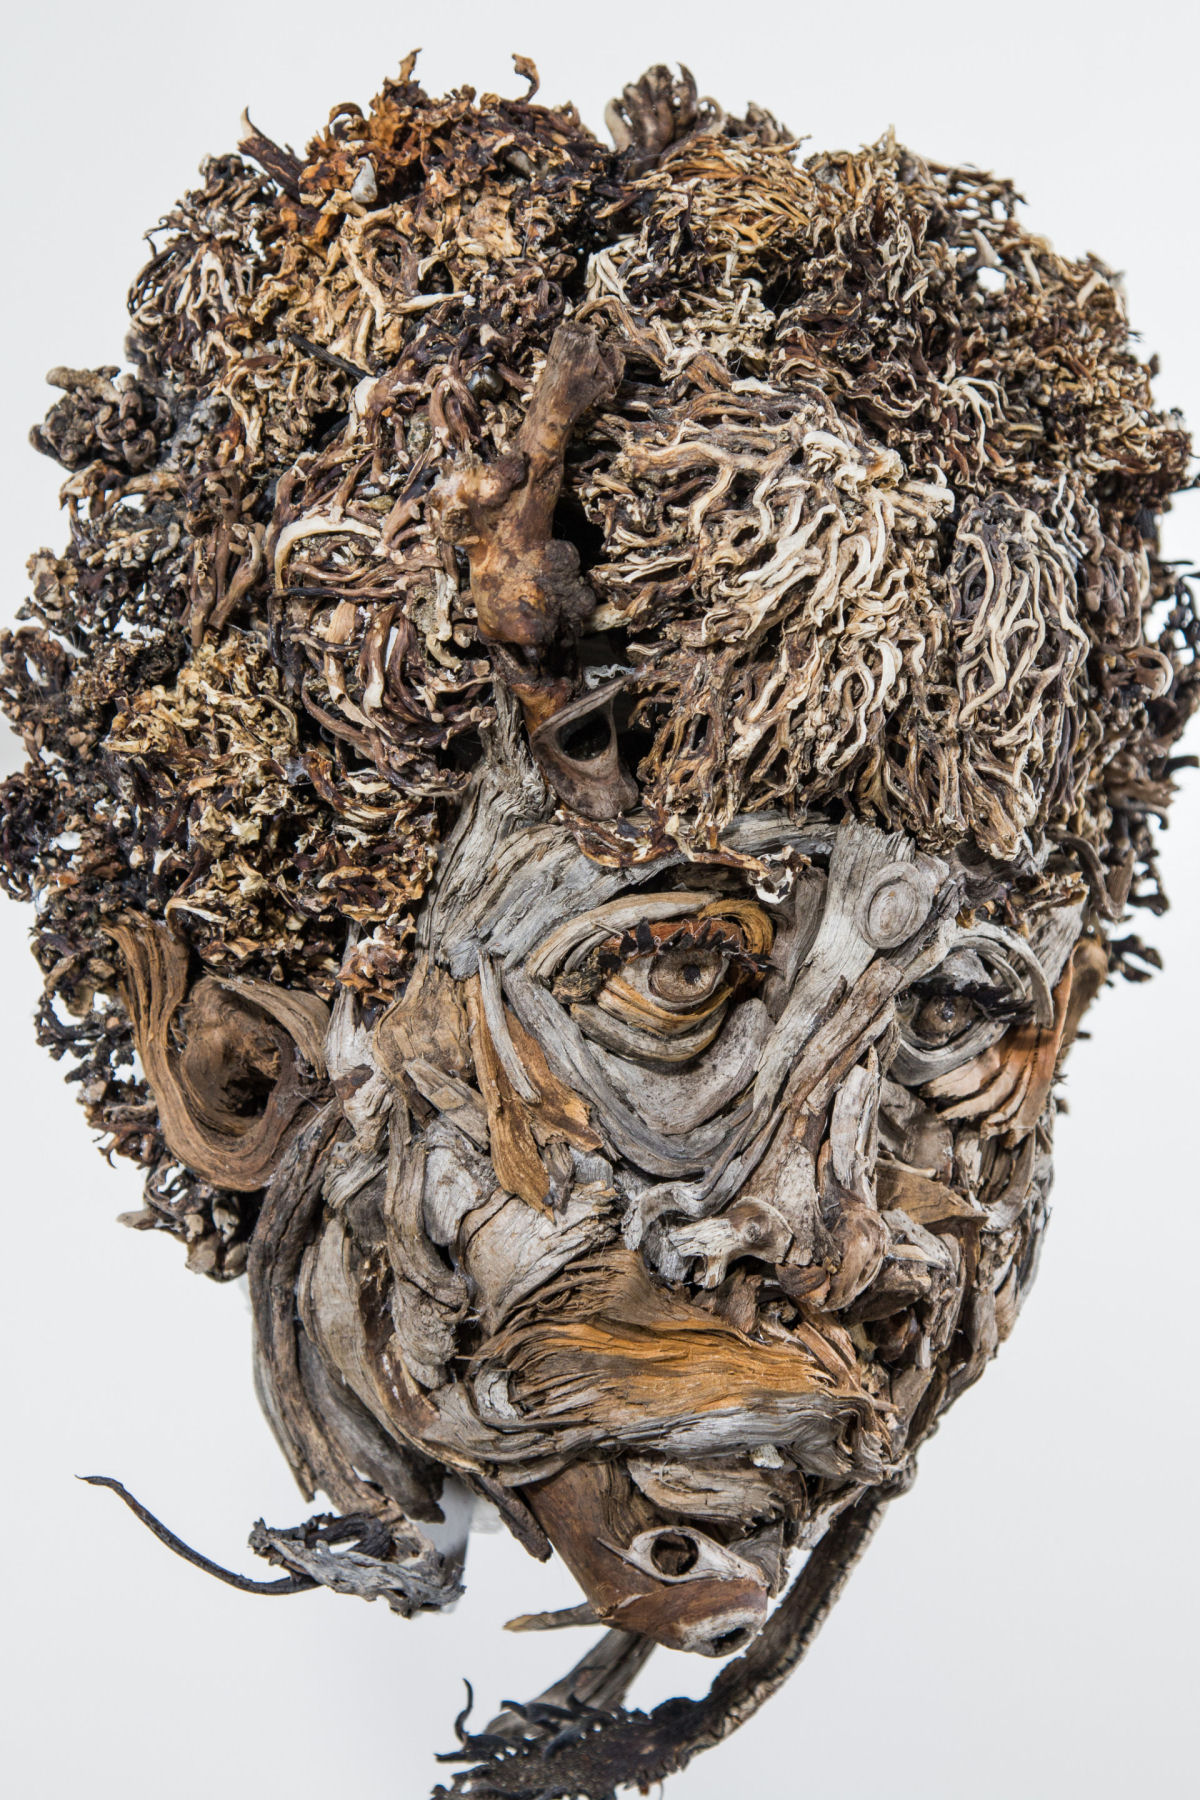 Faces retorcidas emergem de retratos esculturais feitos com restos de madeira 08